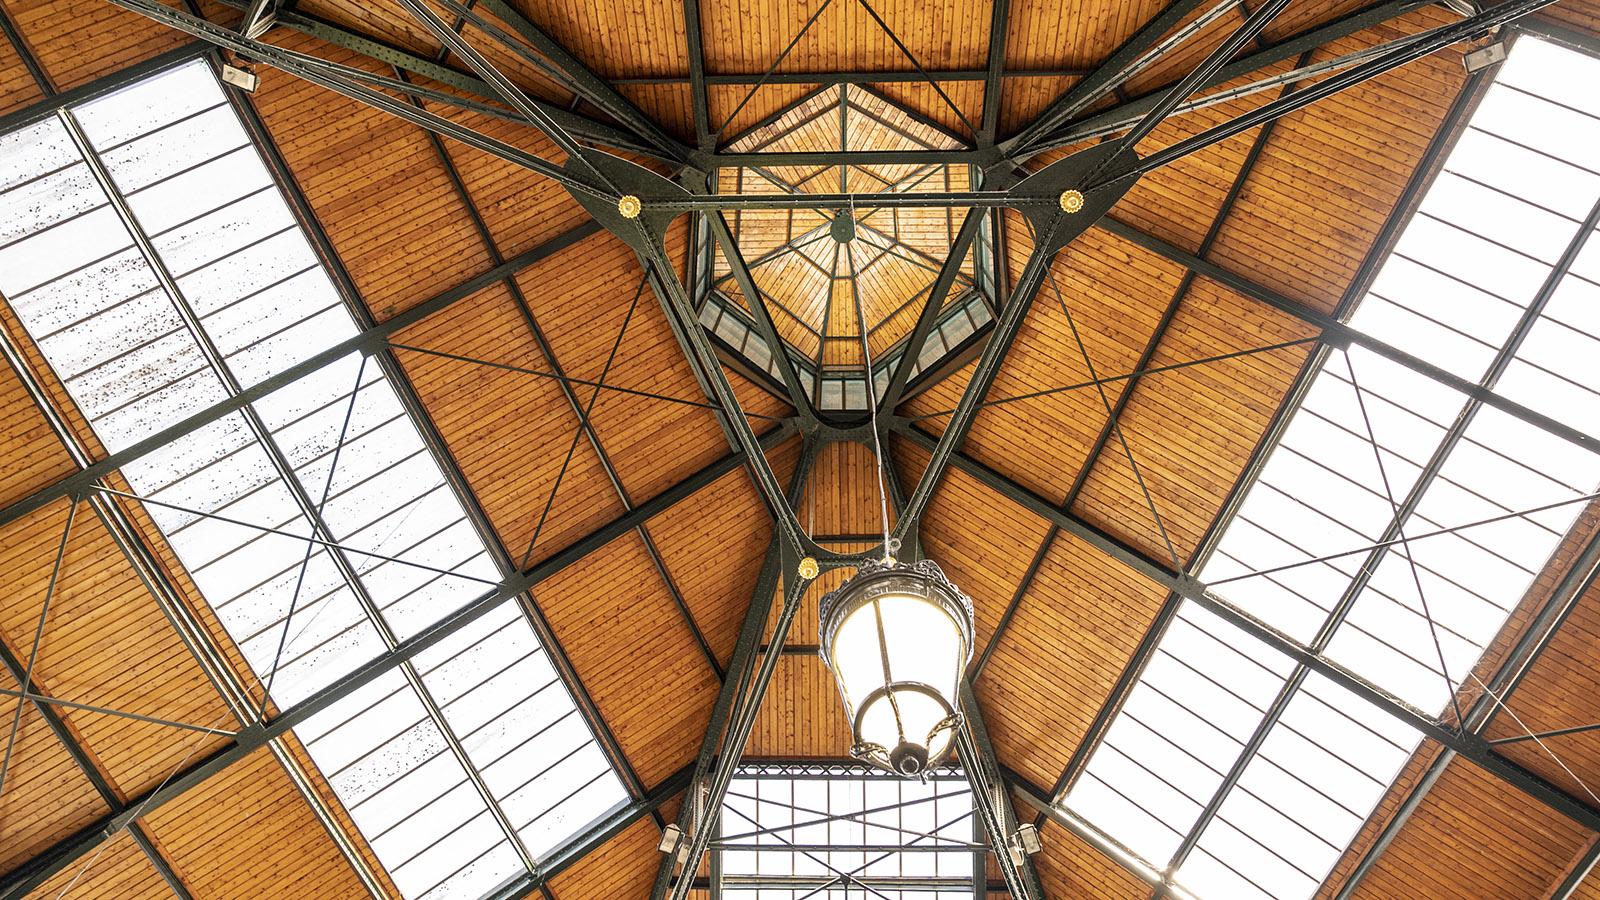 Beeindruckend: das Dach der Markthalle von Sens. Foto: Hilke Maunder